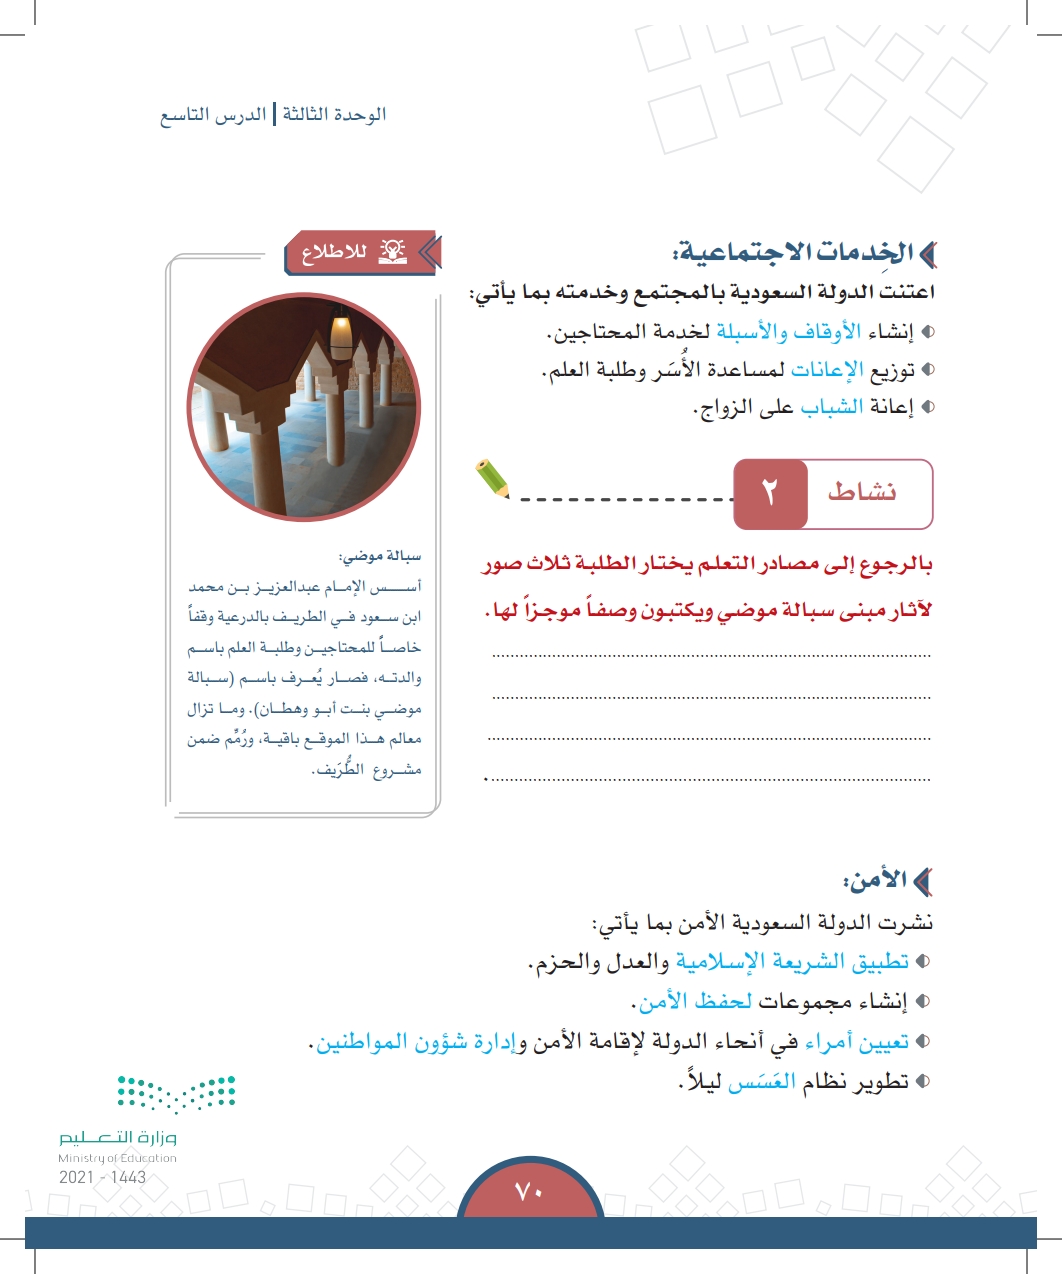 الدرس التاسع: الجوانب الحضارية للدولتين السعوديتين الأولى والثانية